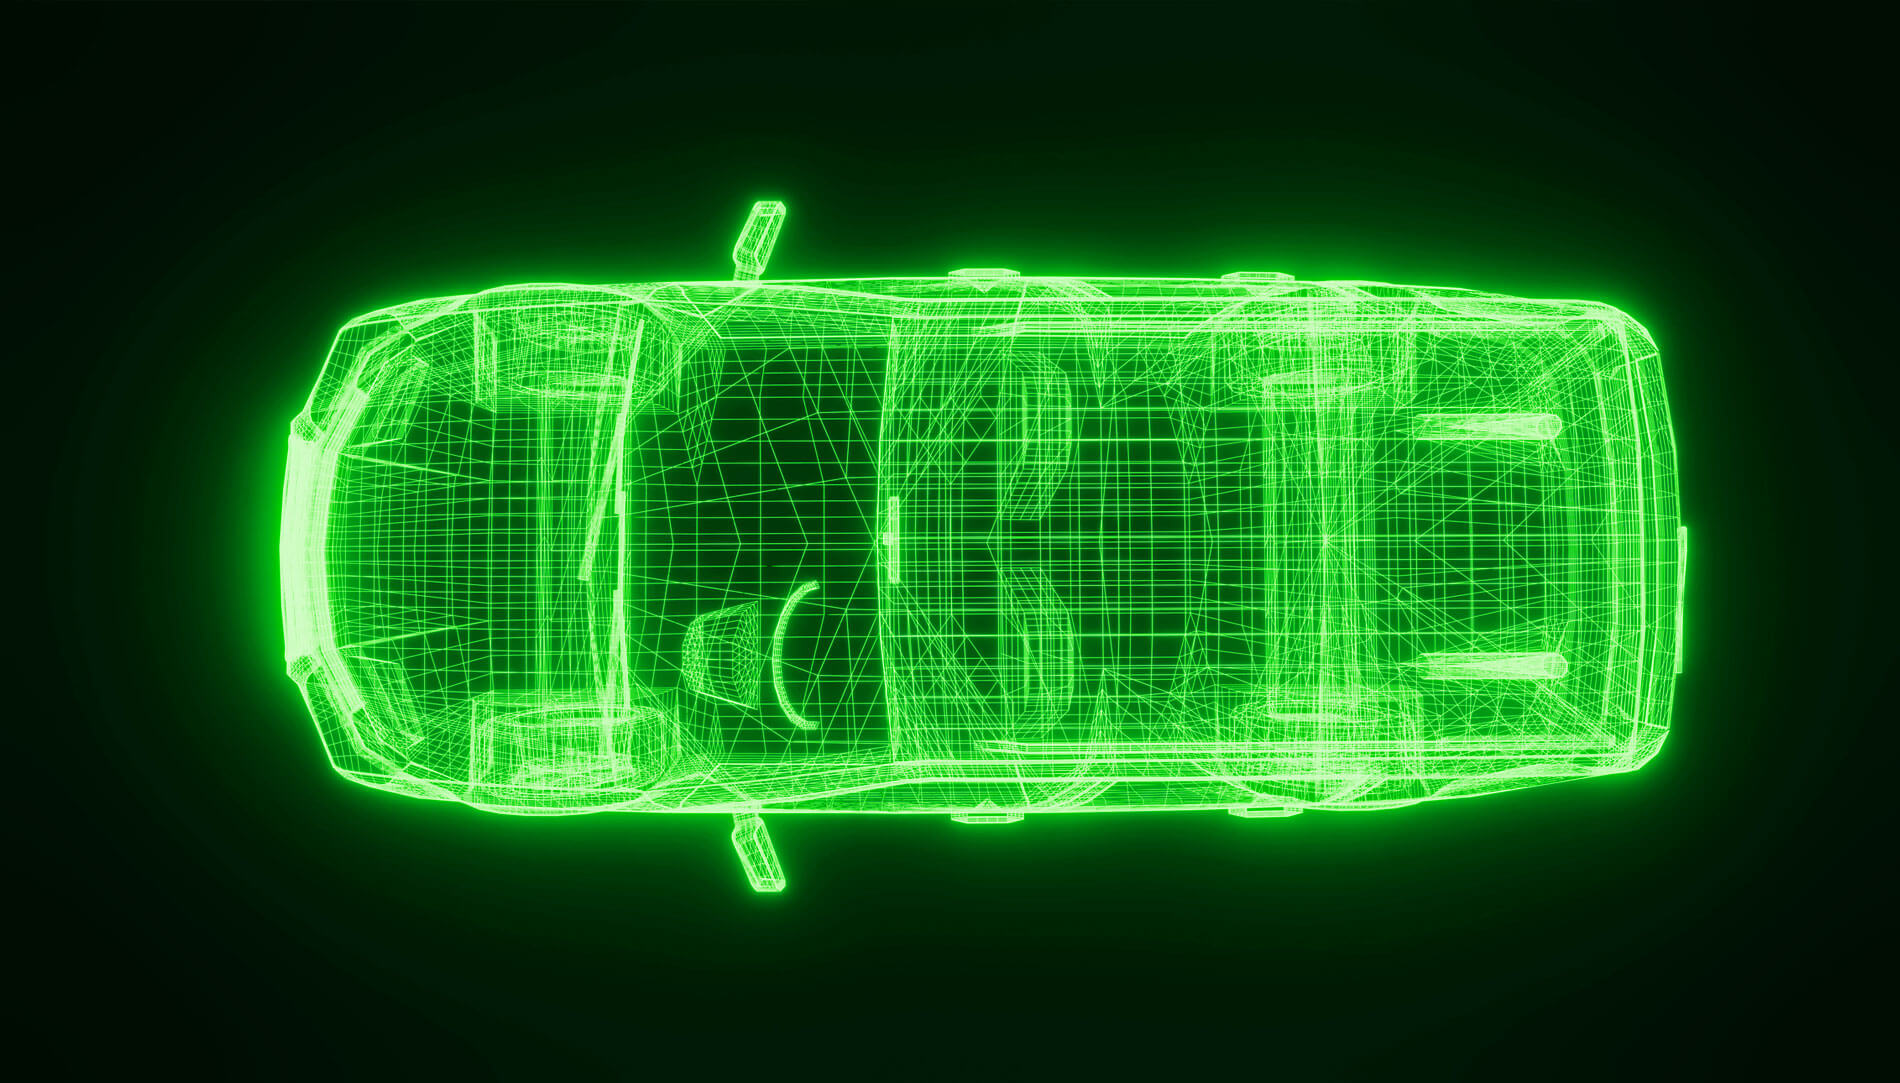 Impression of a green car